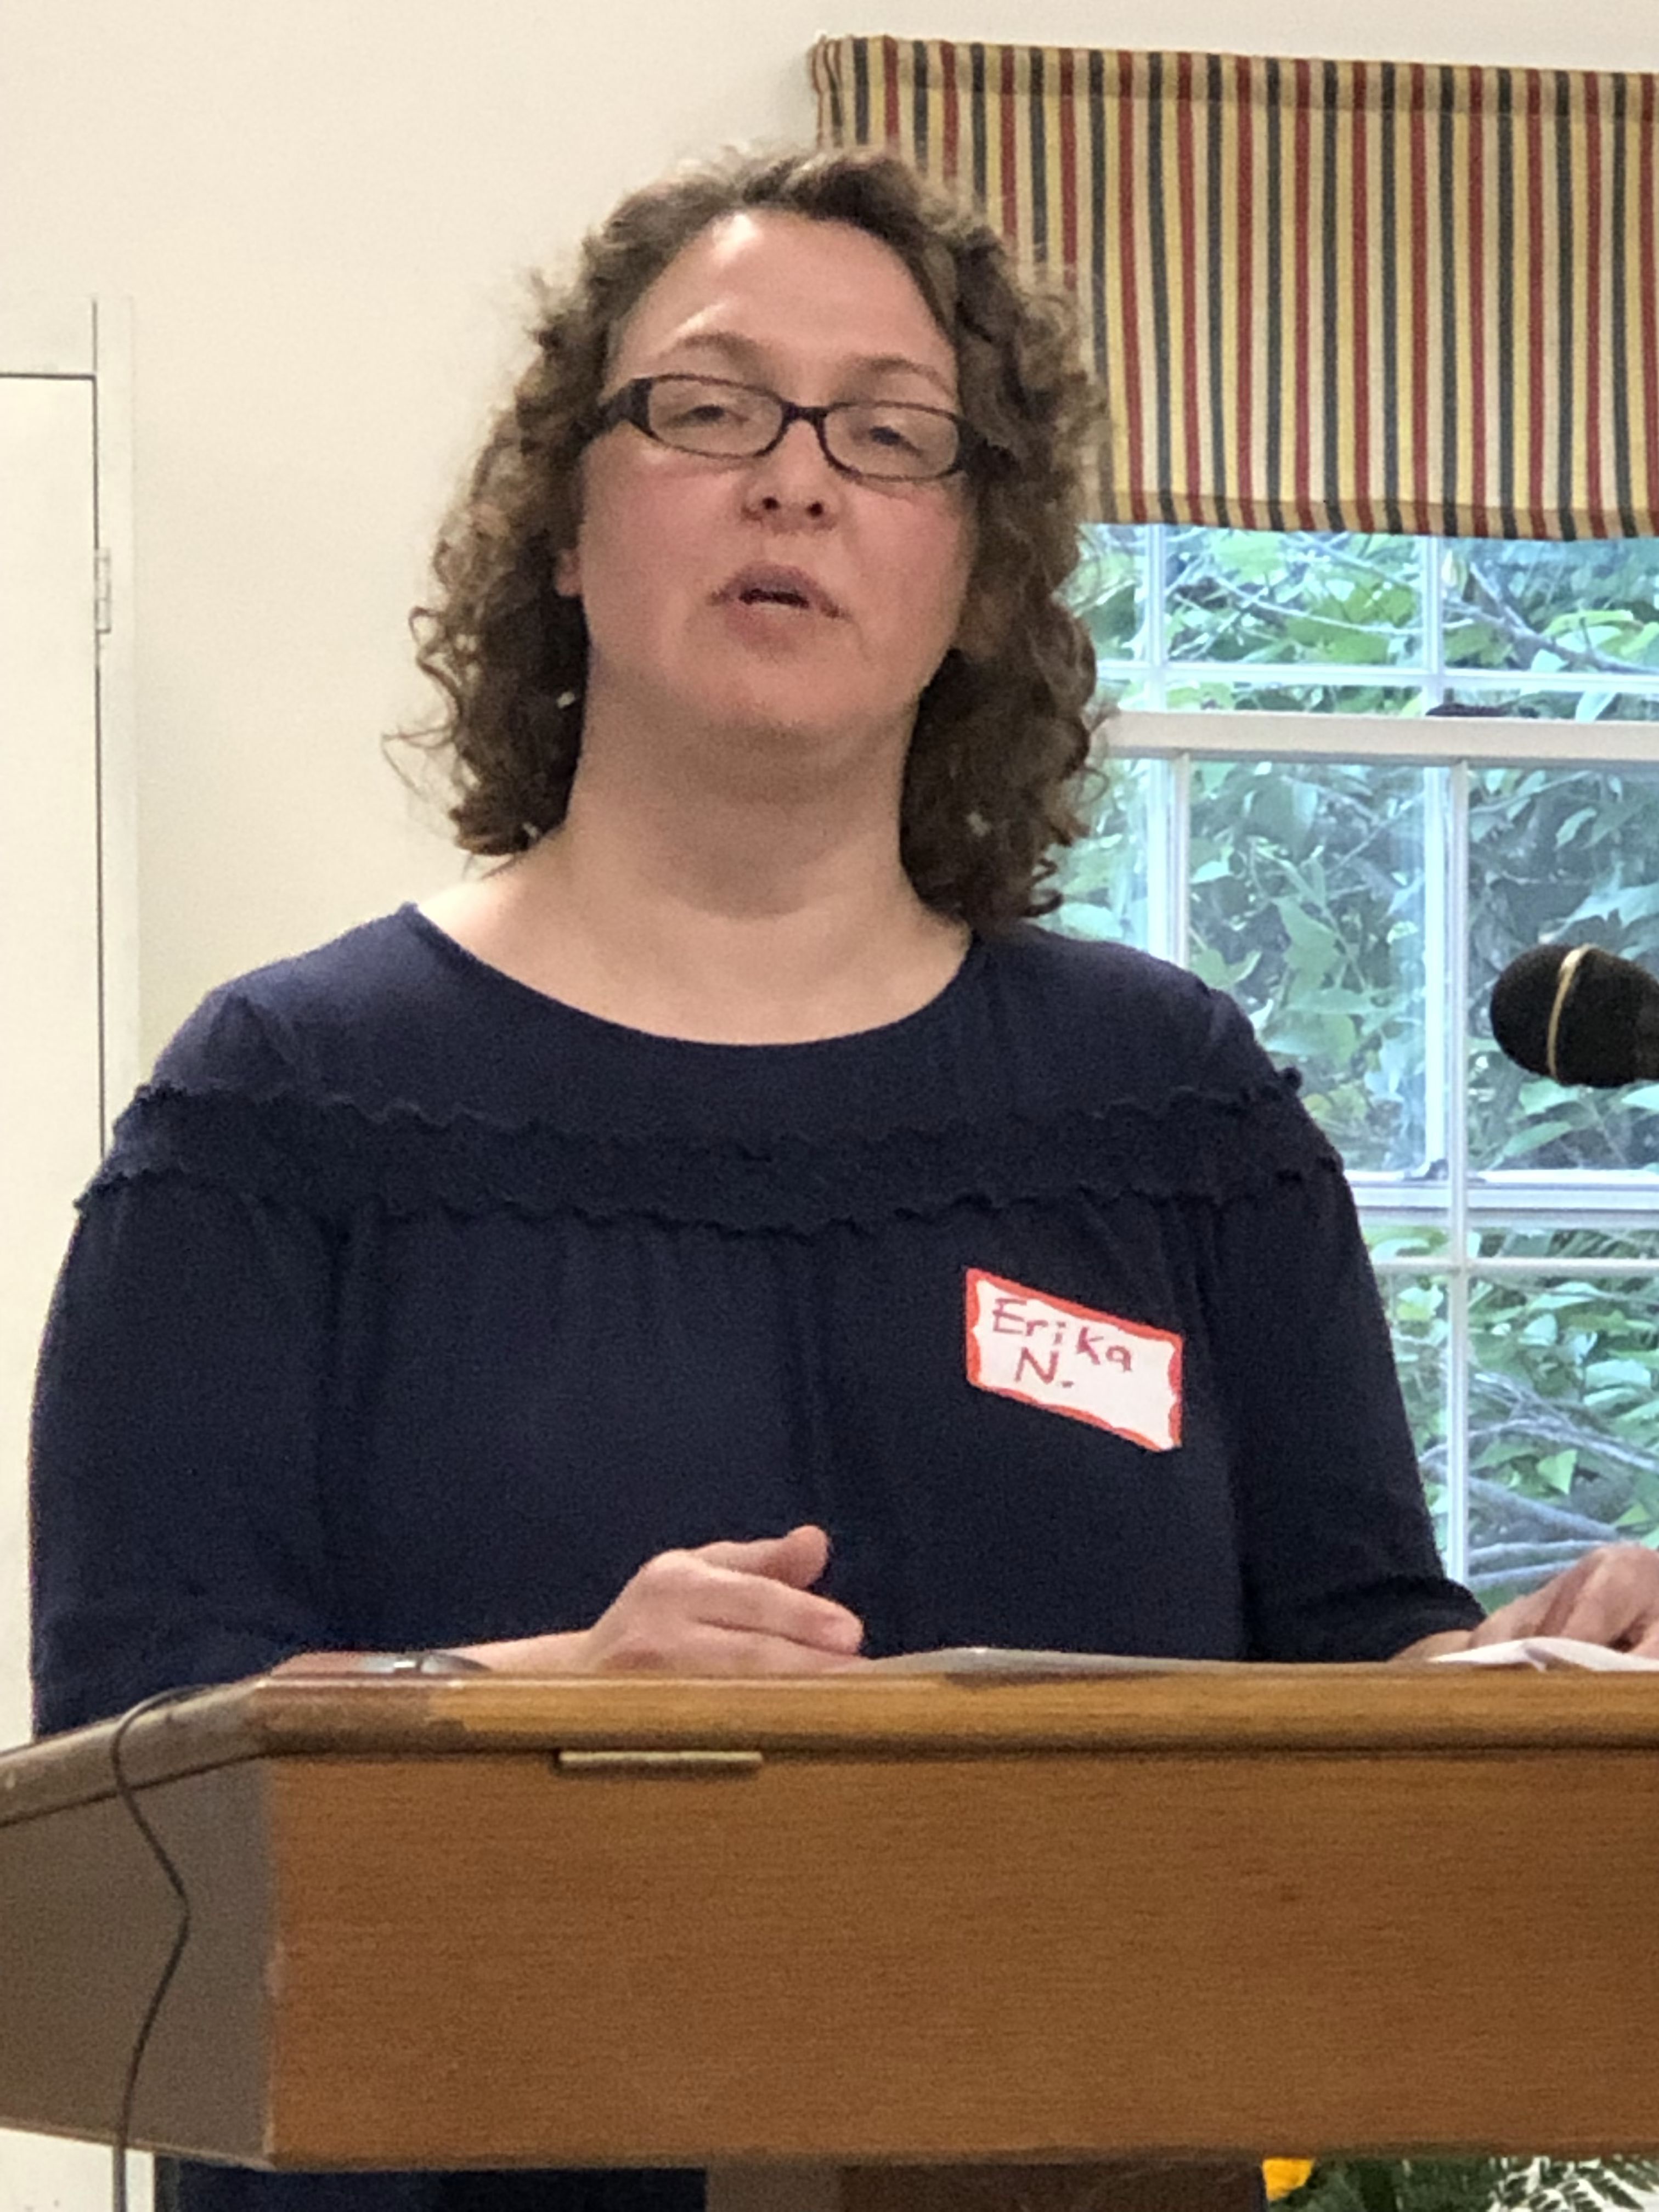 Acadia Center's Erika Niedowski speaking at the 2019 ECRI Annual Meeting.